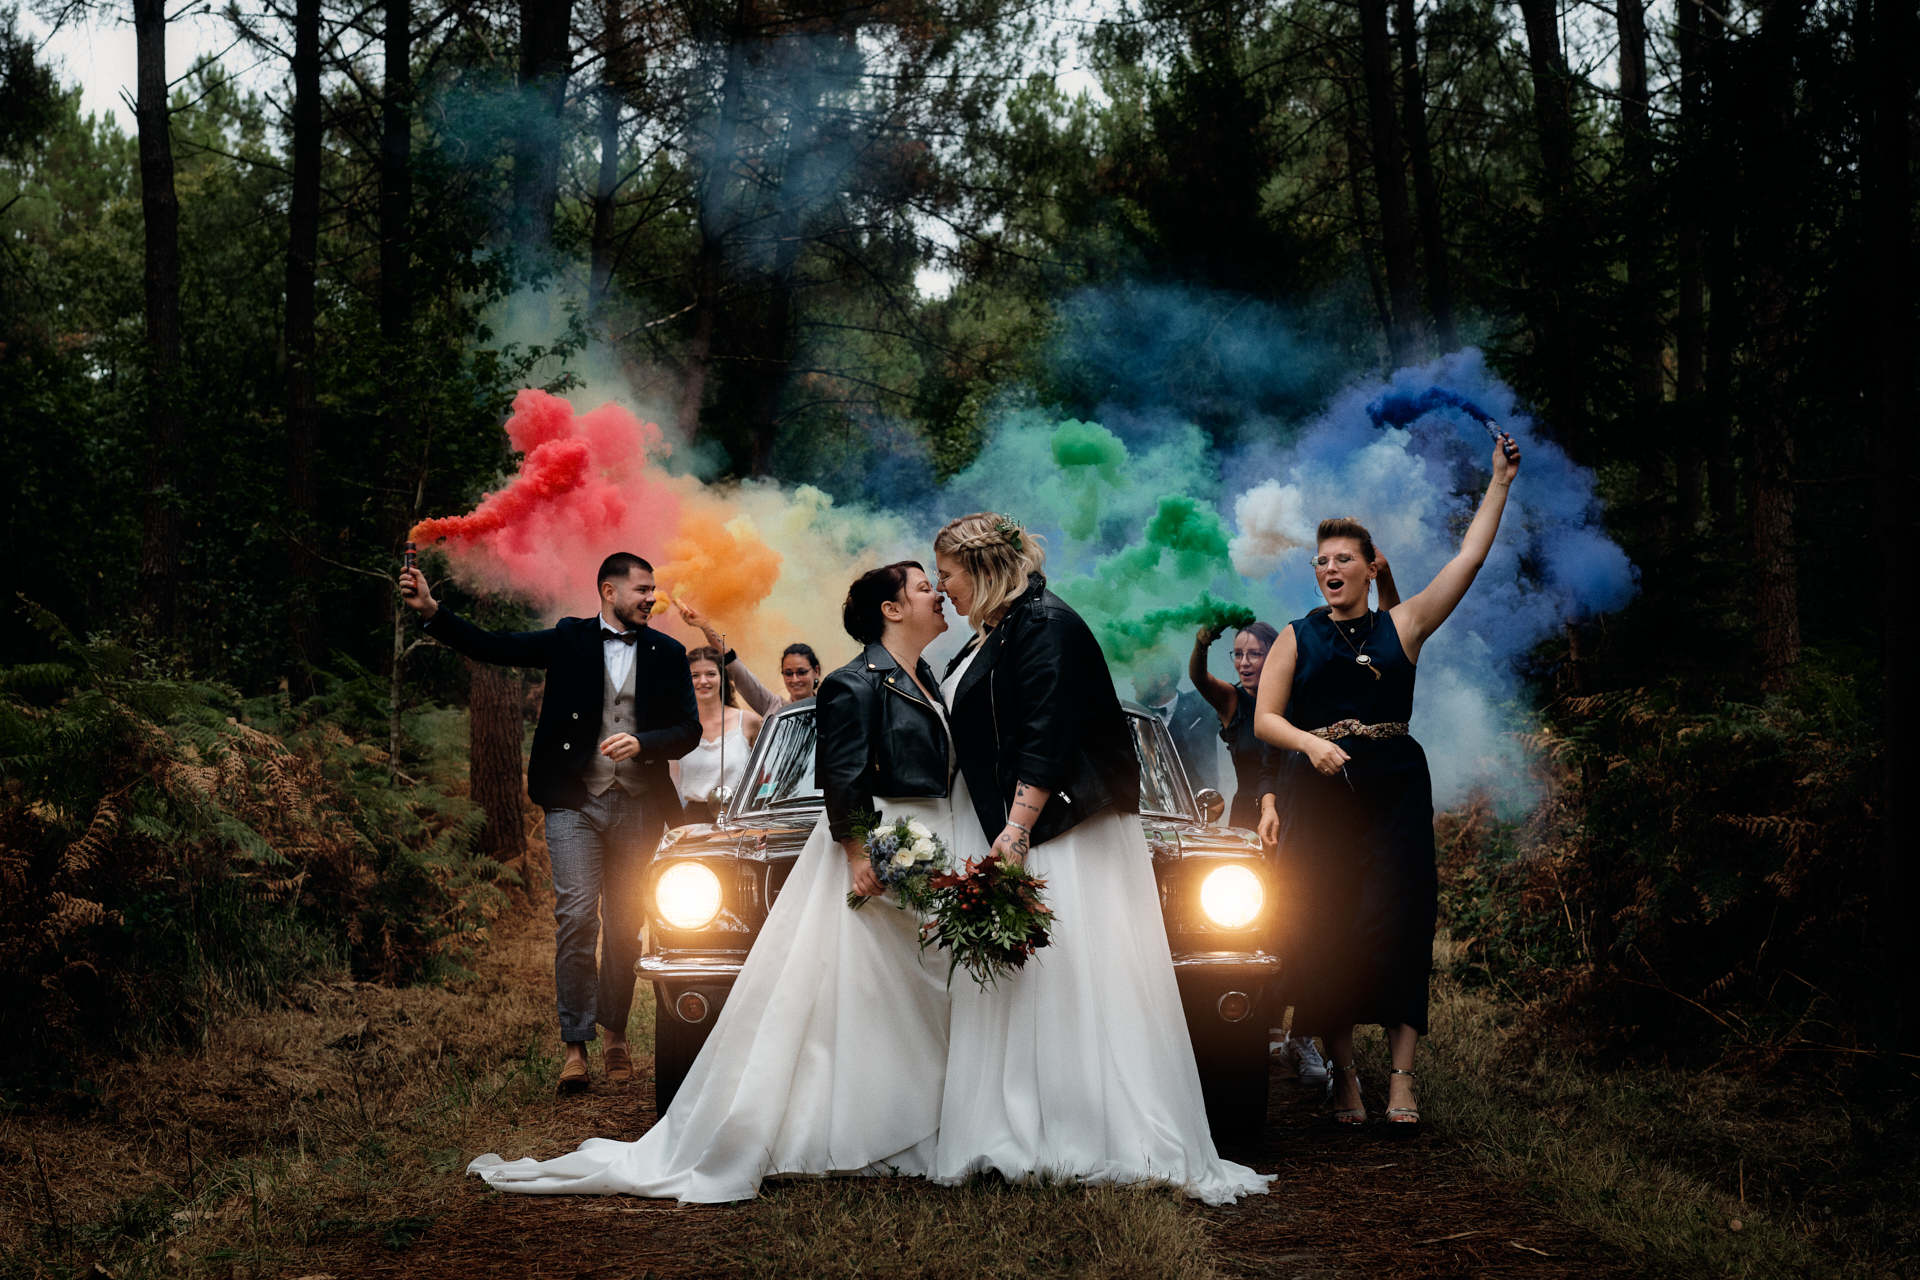 Photo de mariage prise par un photographe de mariage professionnel. Les mariées sont devant leur voiture et leurs témoins arrivent avec des fumigènes formant un arc-en-ciel